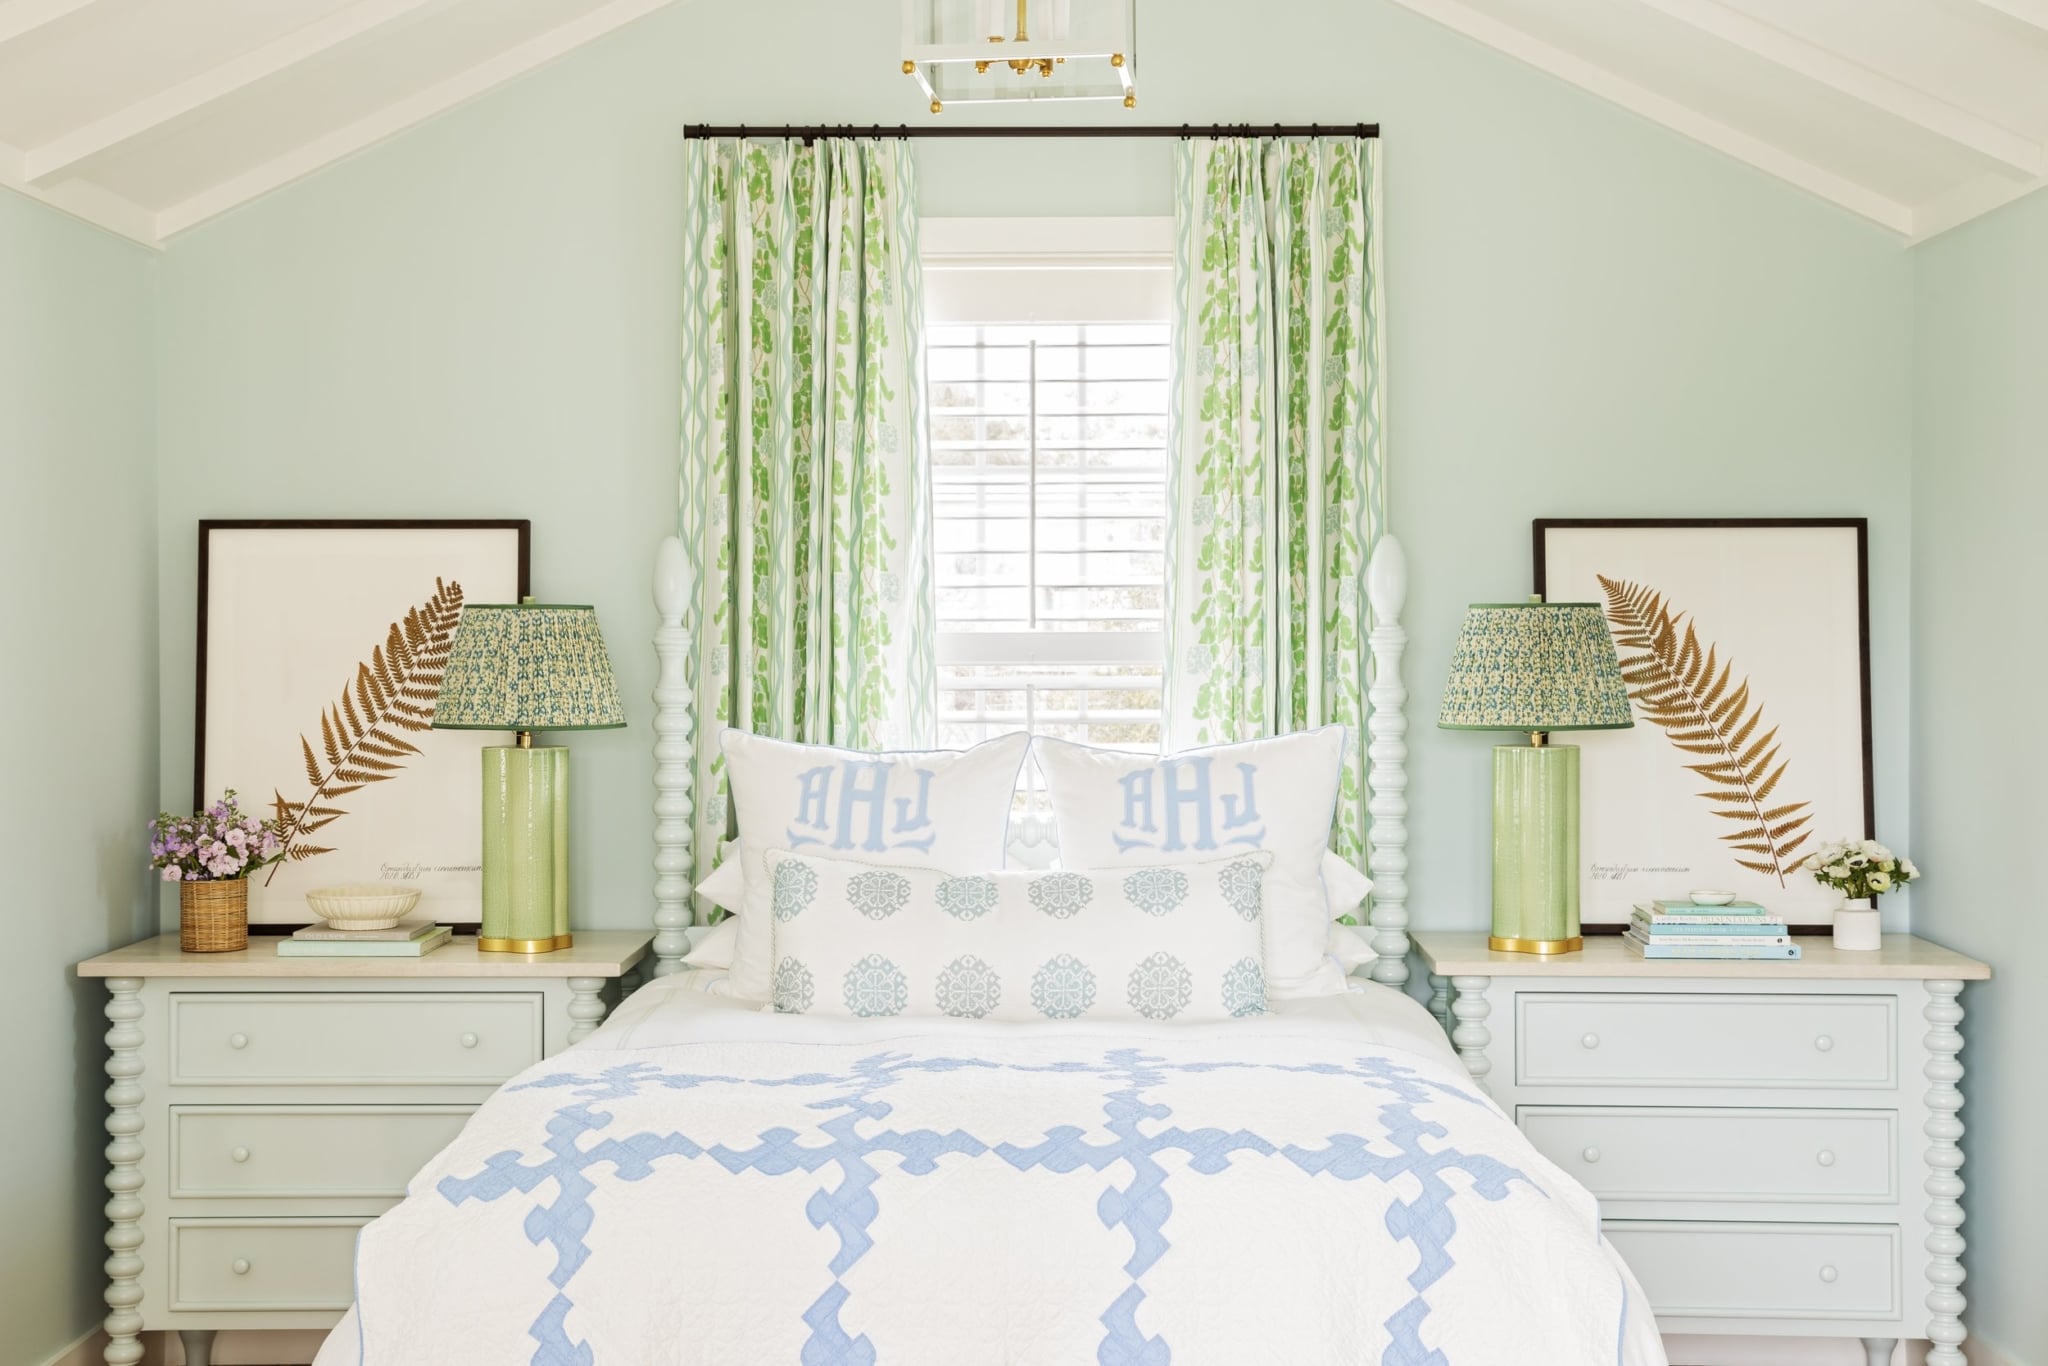 Kara Miller Interior Design - Brantley Photography - Sullivan's Island home - bedroom - bedroom design